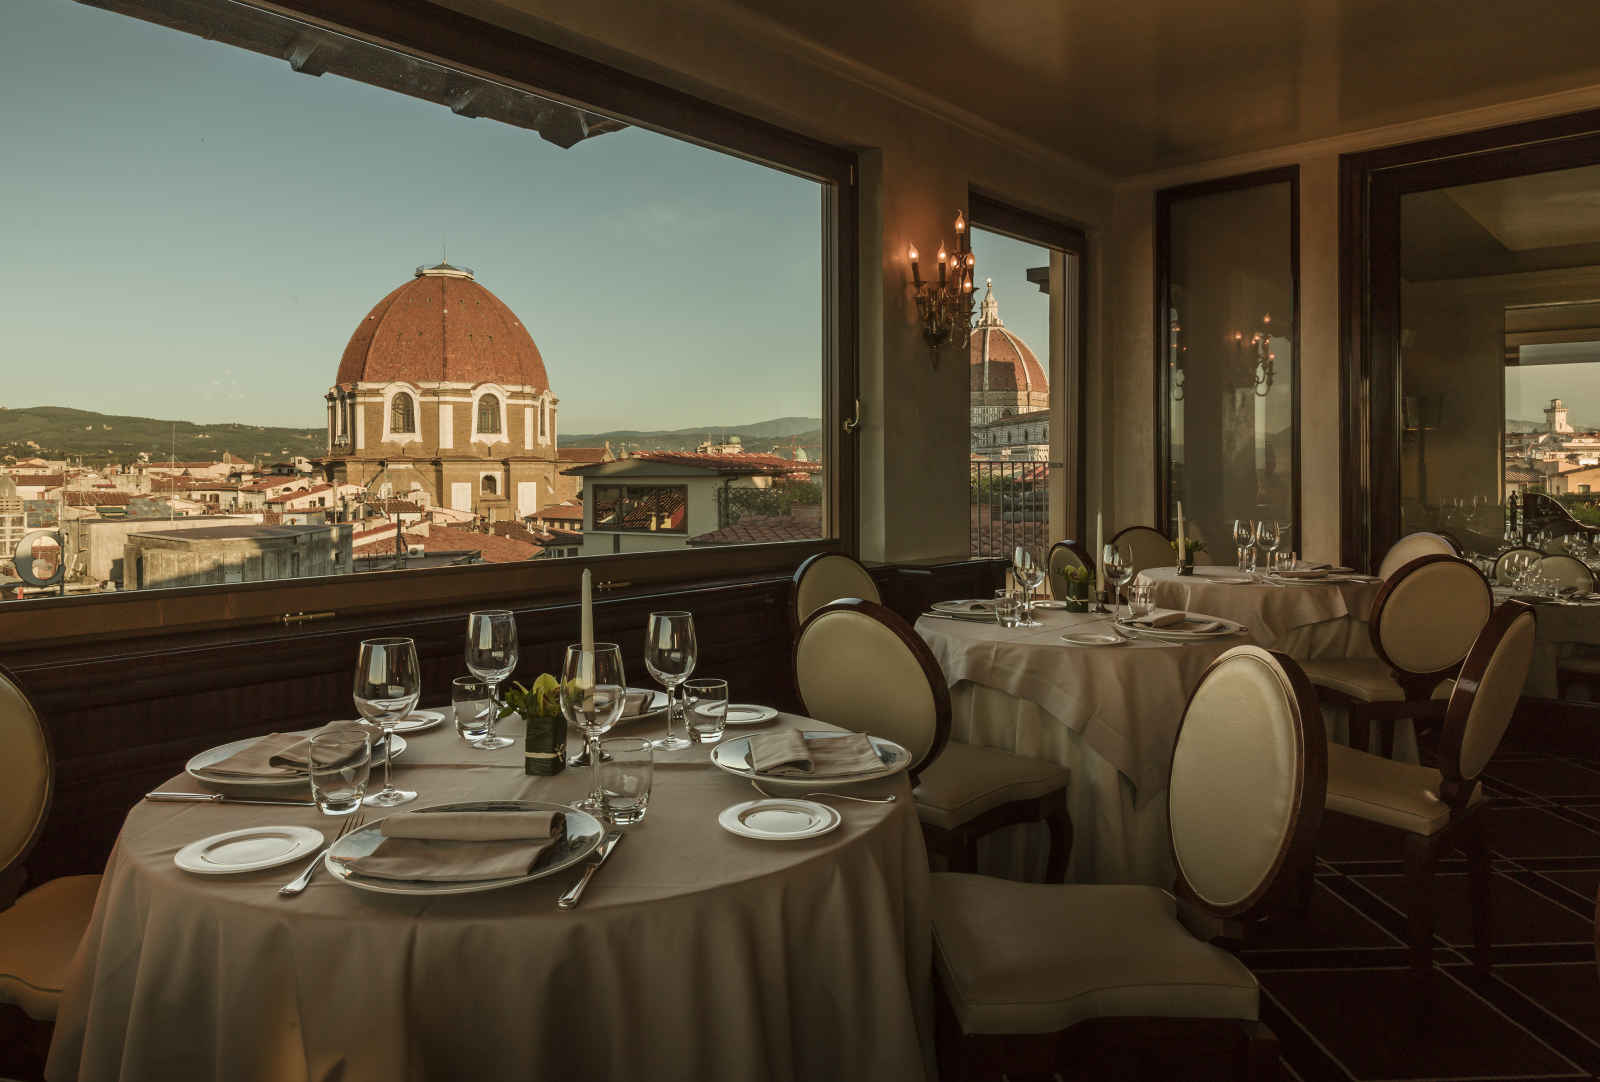 Italie - Florence - Toscane - Grand Hôtel Baglioni 4*